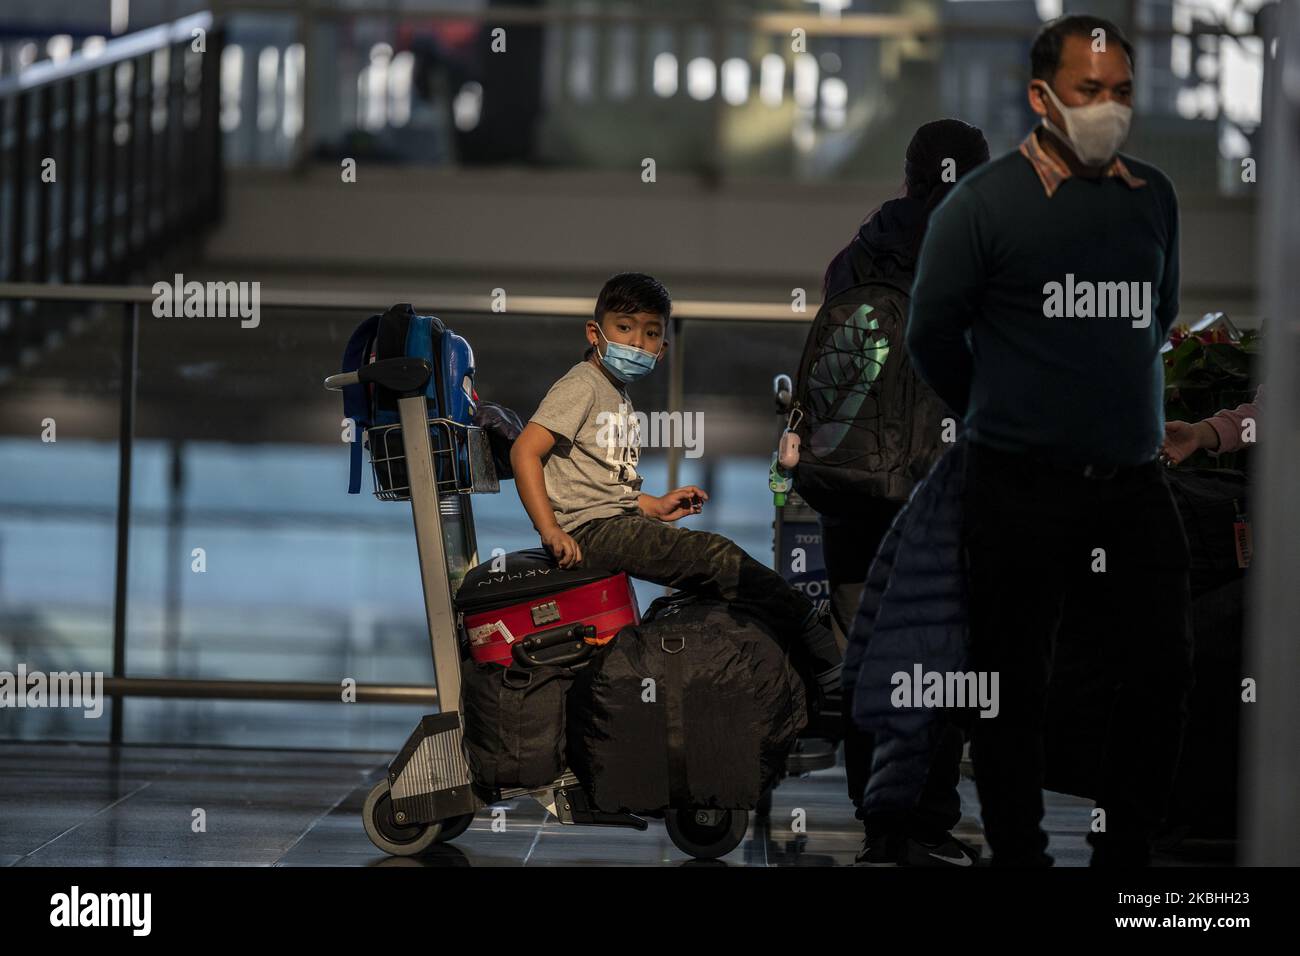 Am 22. Februar 2020 wird in Hongkong, China, ein maskierter Junge im Terminal des Internationalen Flughafens von Hongkong gesehen. Das Coronavirus oder Covid-19, das aus Wuhan, China stammt, hat bis heute über 77.000 Menschen infiziert und 2361 Menschen weltweit getötet. Die Passagierflüge nach und aus Hongkong sind um zwei Drittel zurückgefallen, da die Fluggesellschaften Flüge annulliert haben und die Reisenden aufgrund des Coronavirus in Hongkong stürzte. (Foto von Vernon Yuen/NurPhoto) Stockfoto